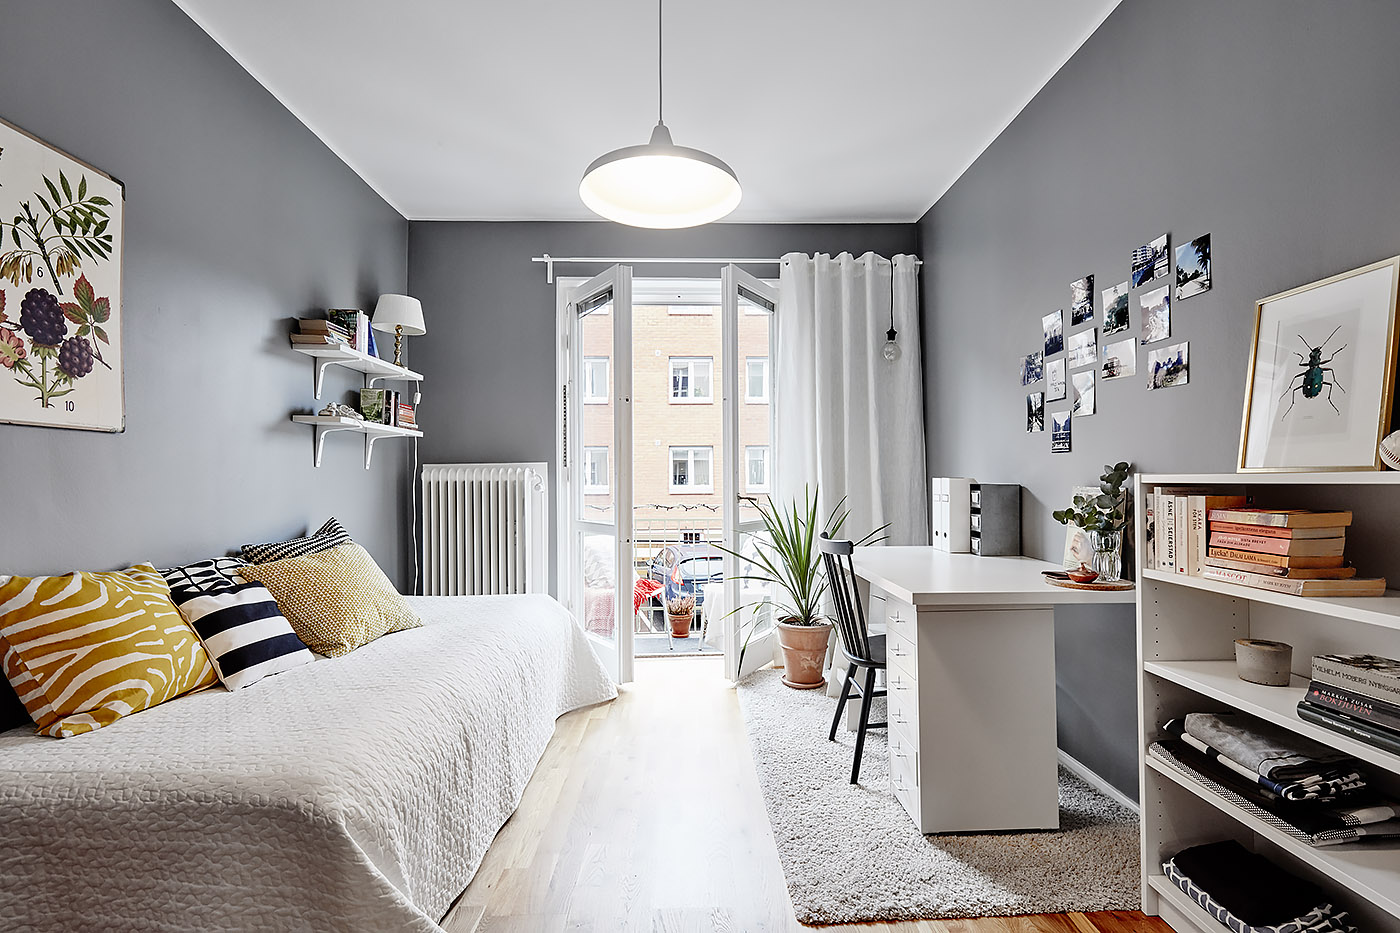 Habitación juvenil con colores en tonos nórdicos con estilo vintage